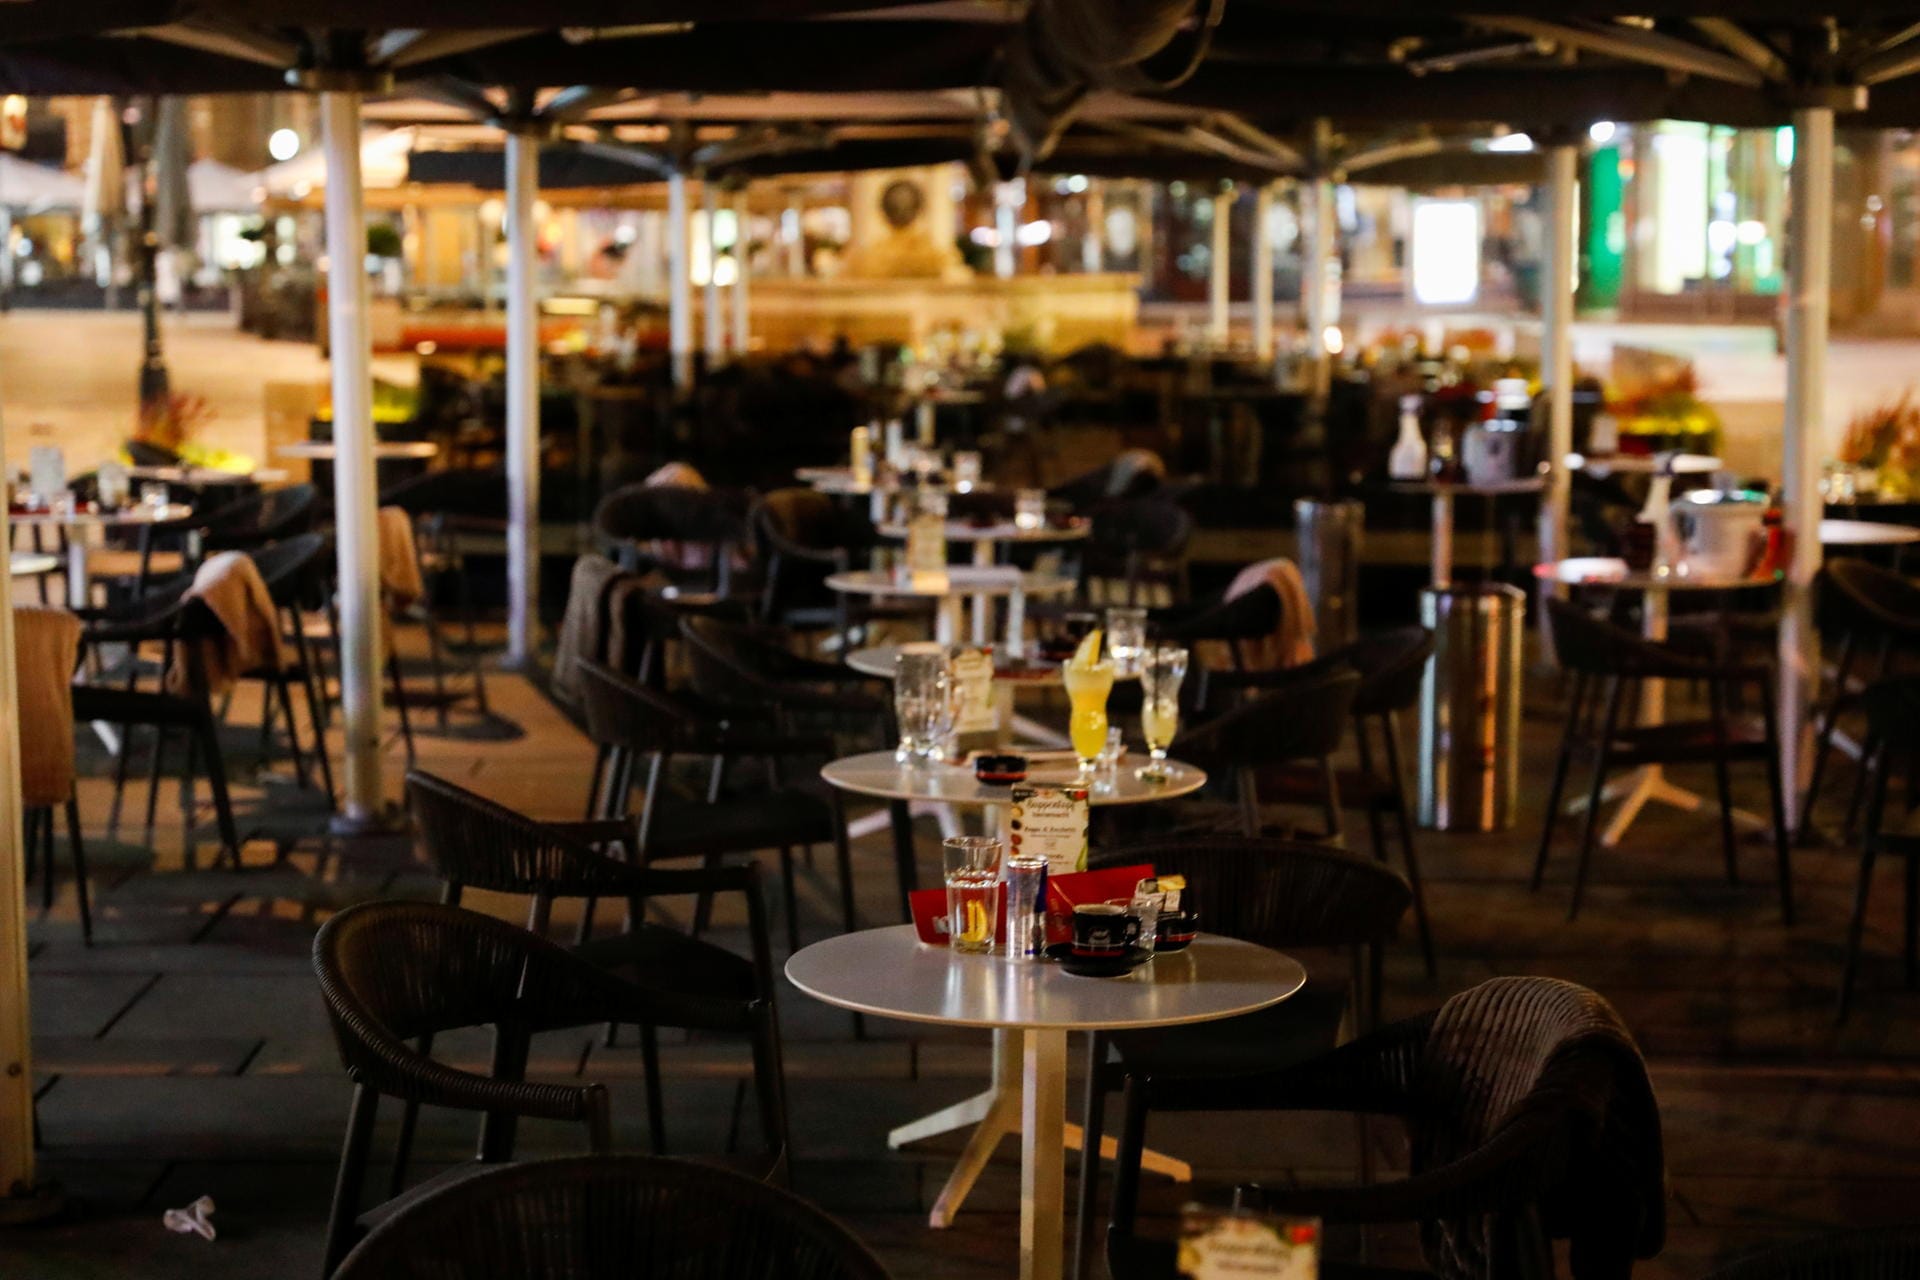 Bars und Restaurants in Wiens Innenstadt: Berichten zufolge schossen die Angreifer wahllos um sich